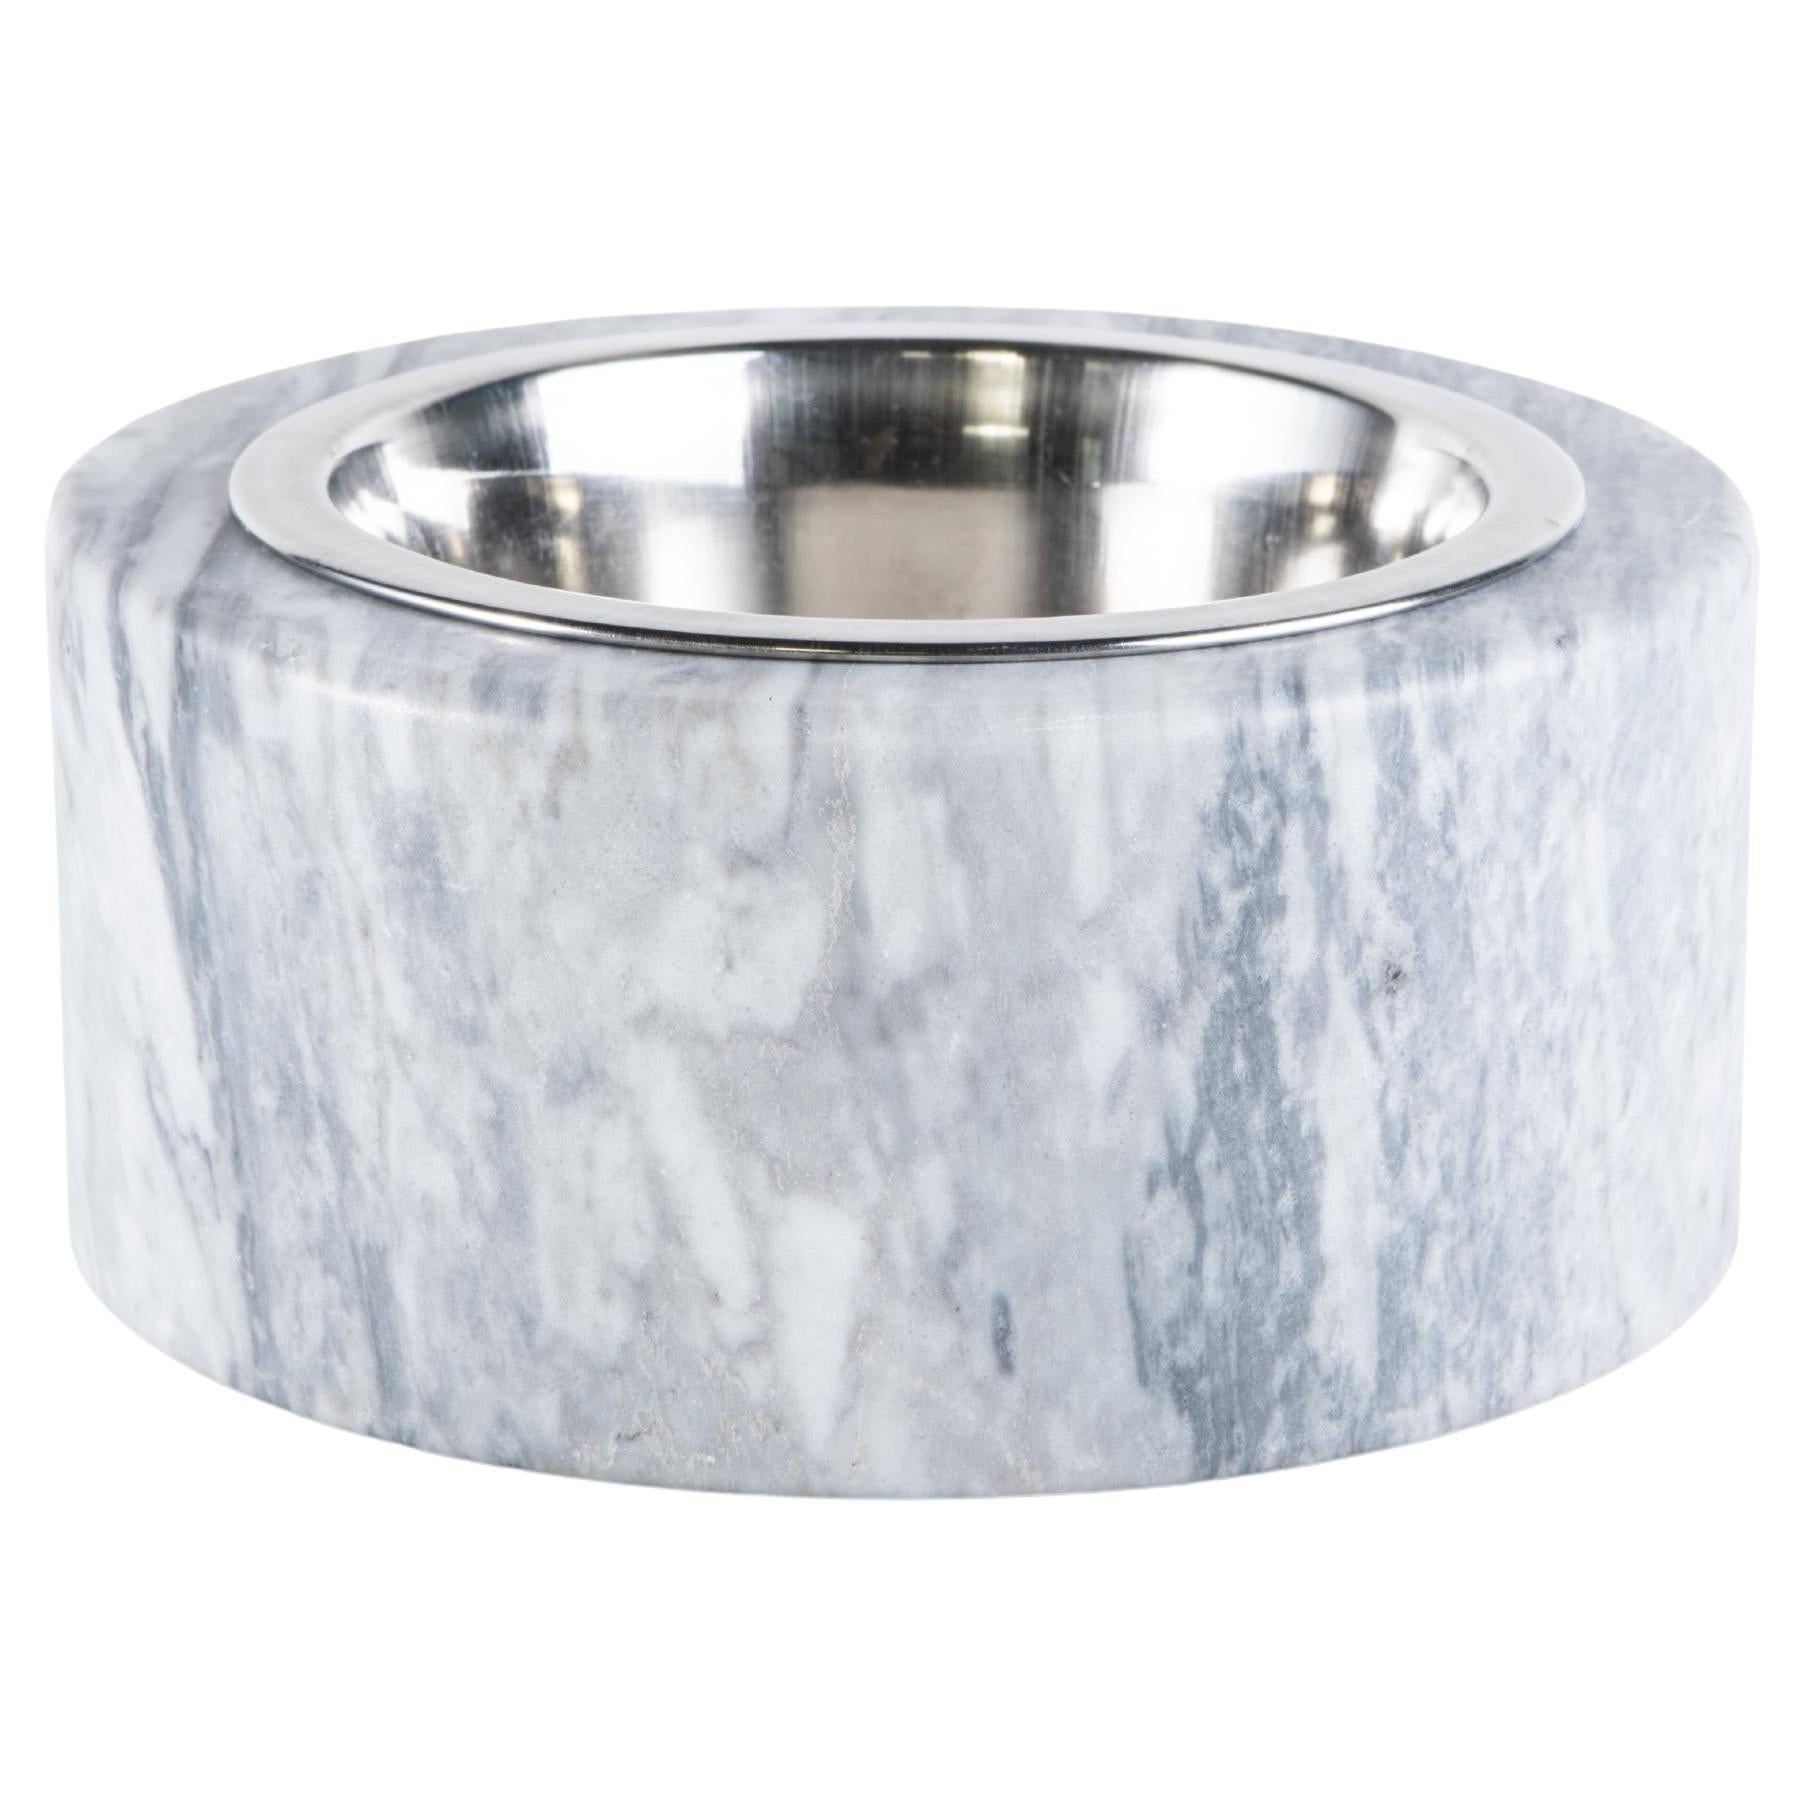 Handgefertigte Schale für Katzen oder Hunde aus grauem Bardiglio-Marmor mit abnehmbarem Stahl